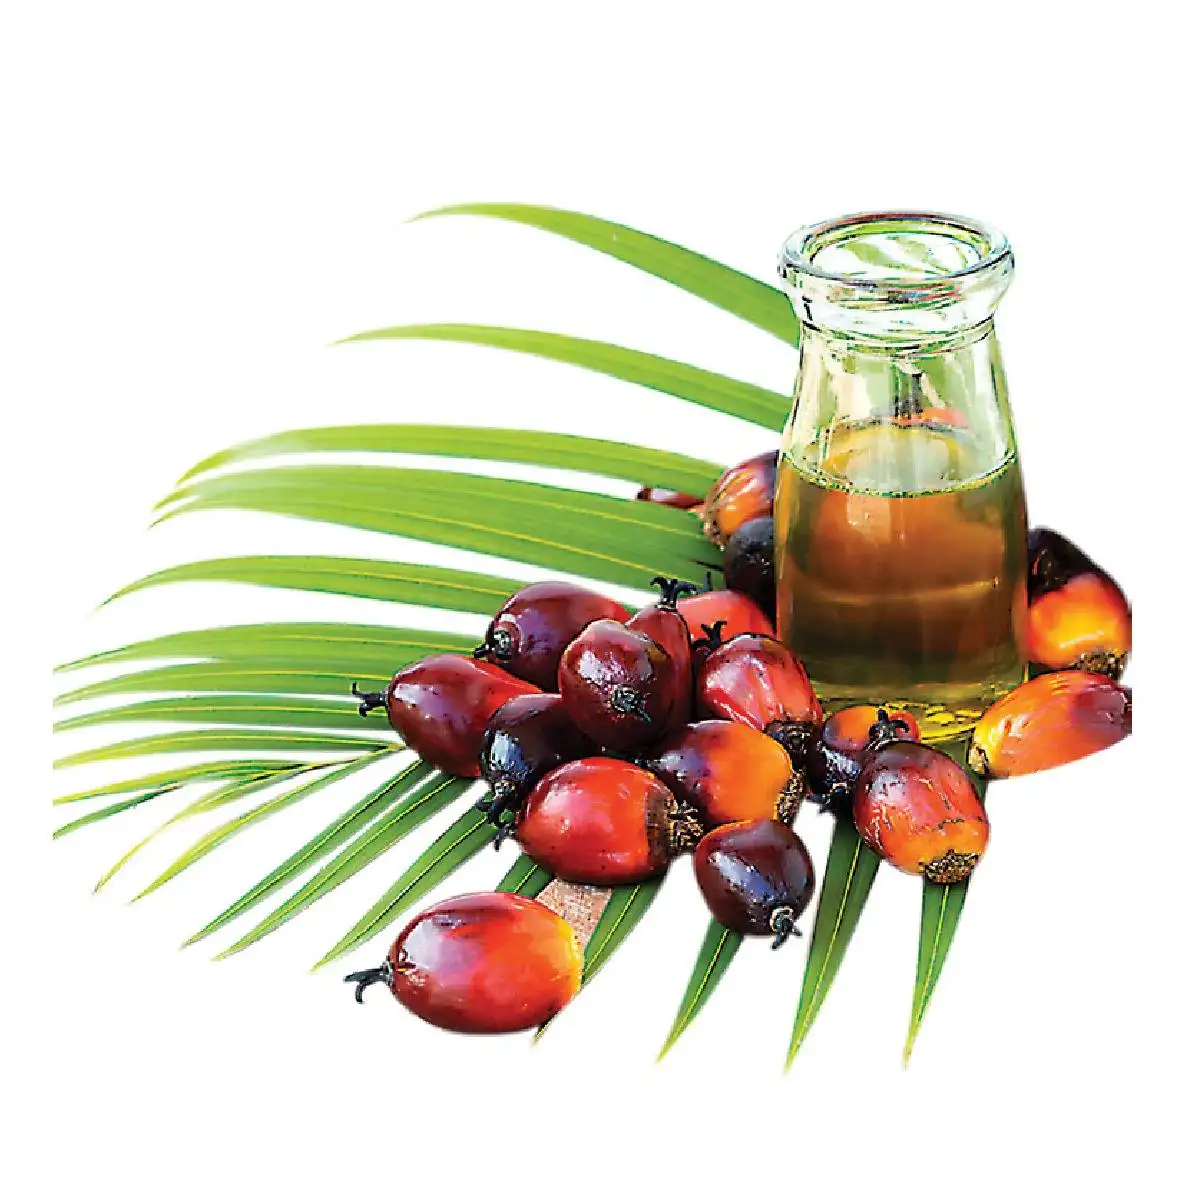 Pure Geraffineerde Palmolie/Palmolie-Oleïne Cp10 Cp8 Cp6 Voor Bakolie/Hete Verkoop Geraffineerde Palmolie